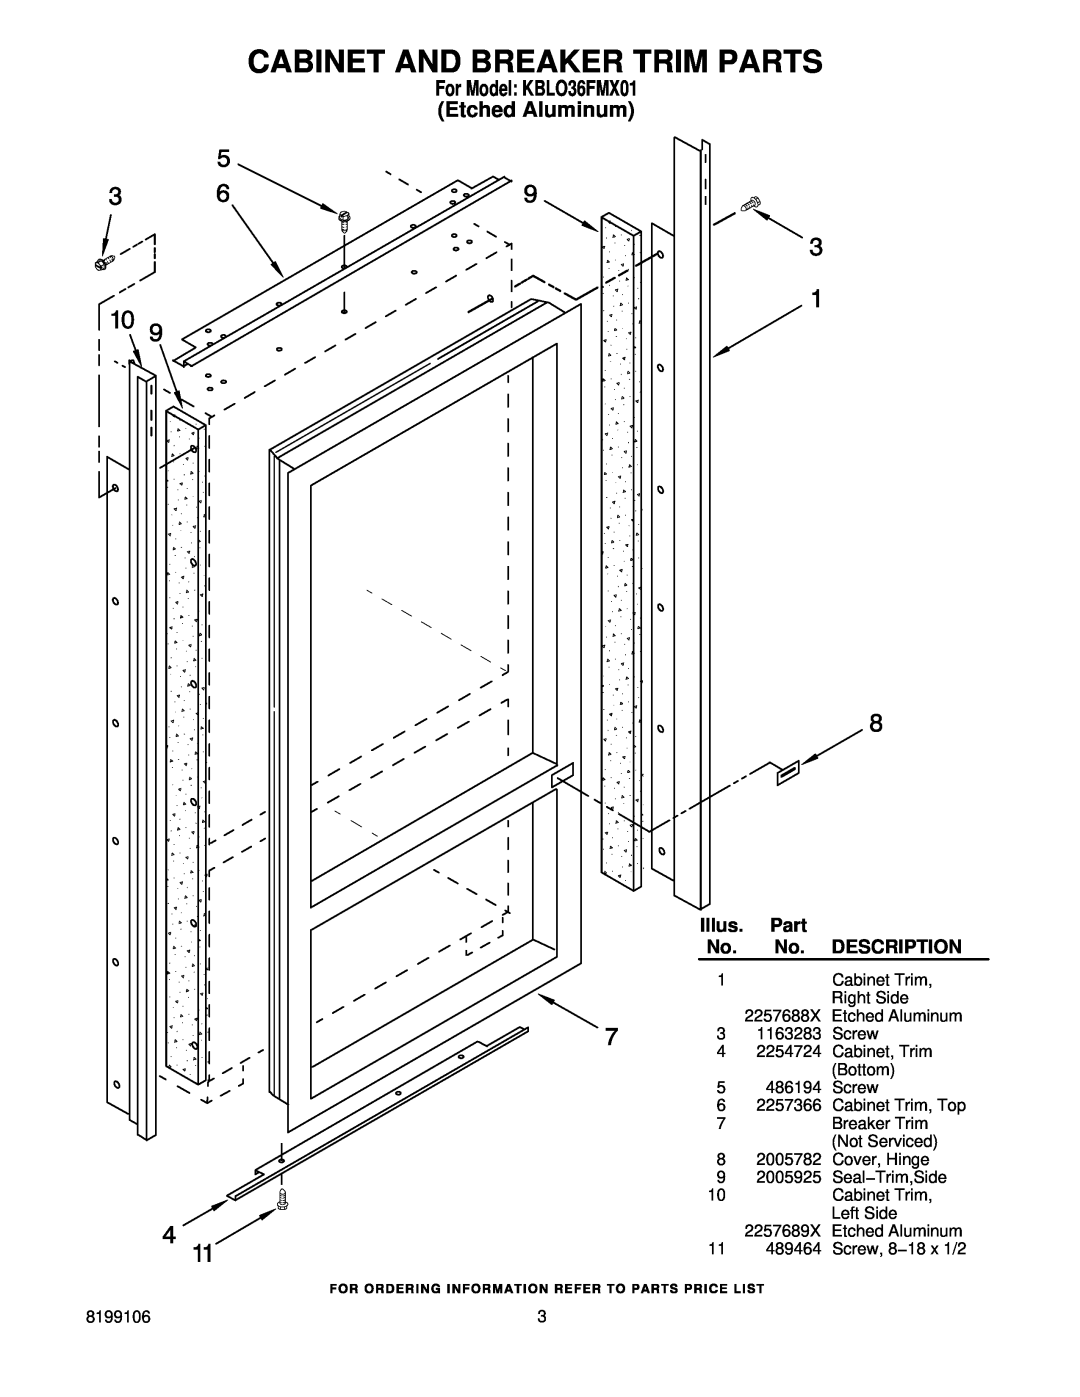 KitchenAid manual Cabinet And Breaker Trim Parts, For Model KBLO36FMX01 Etched Aluminum, Illus, Description 